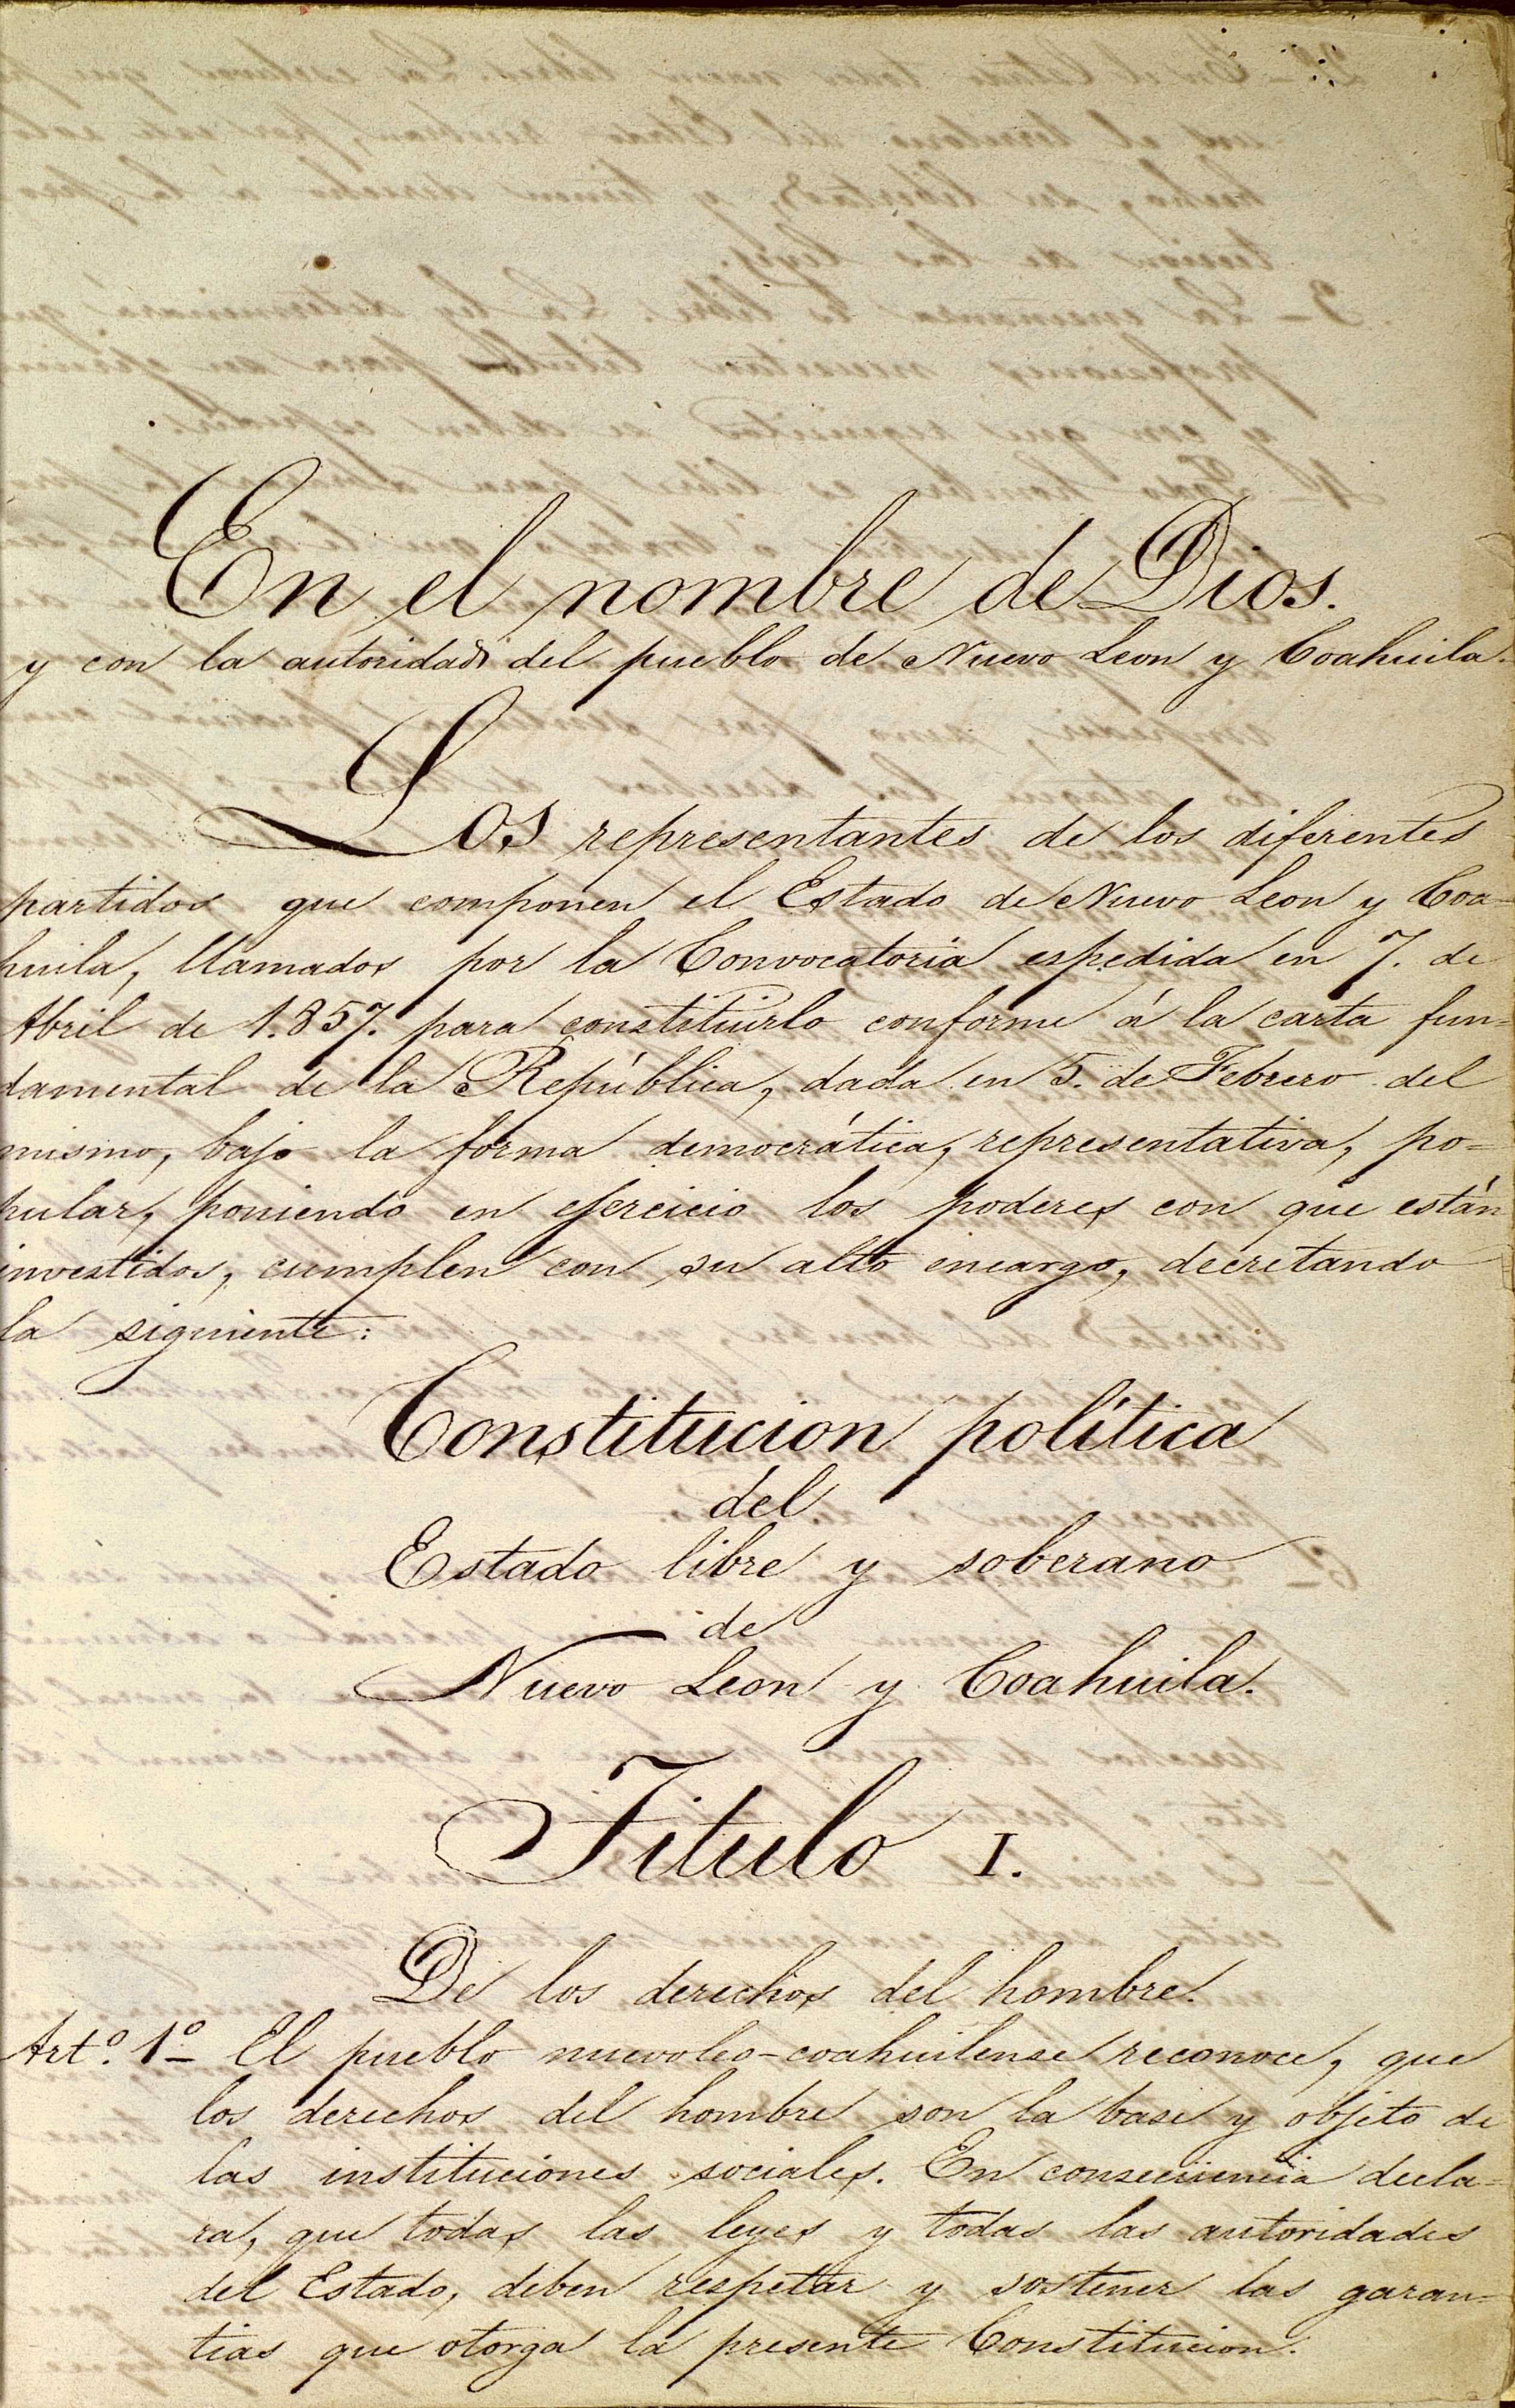 Constitución de Nuevo León y Coahuila     